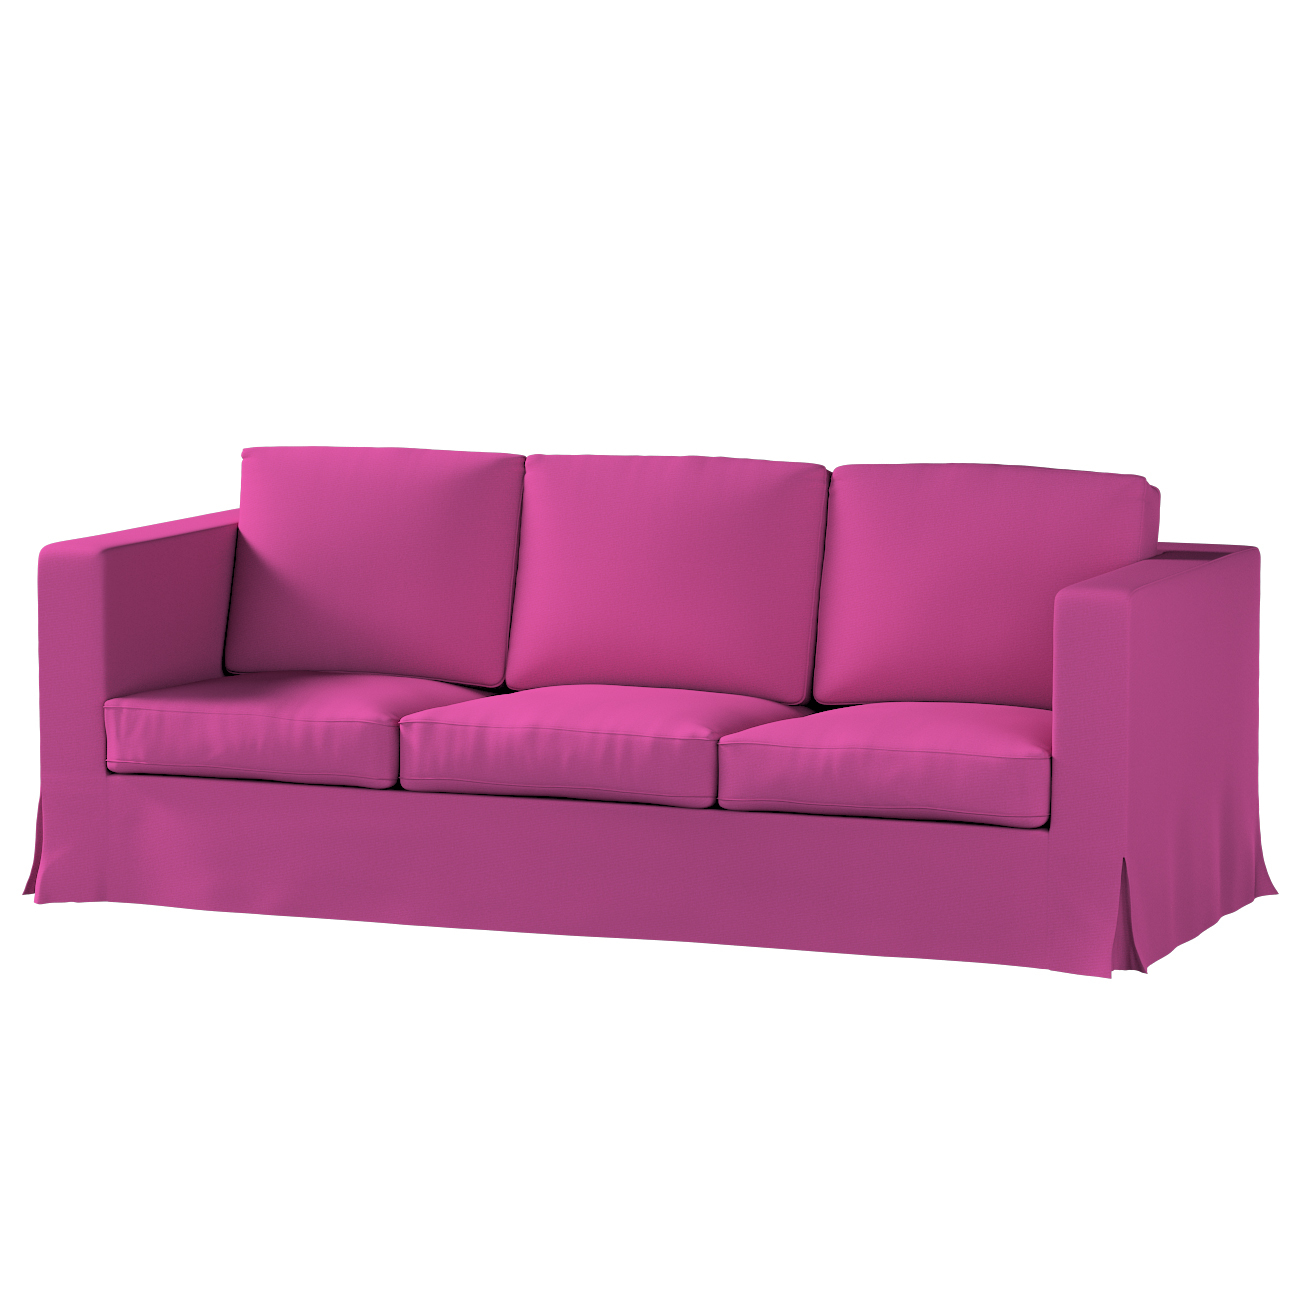 Bezug für Karlanda 3-Sitzer Sofa nicht ausklappbar, lang, amarant, Bezug fü günstig online kaufen